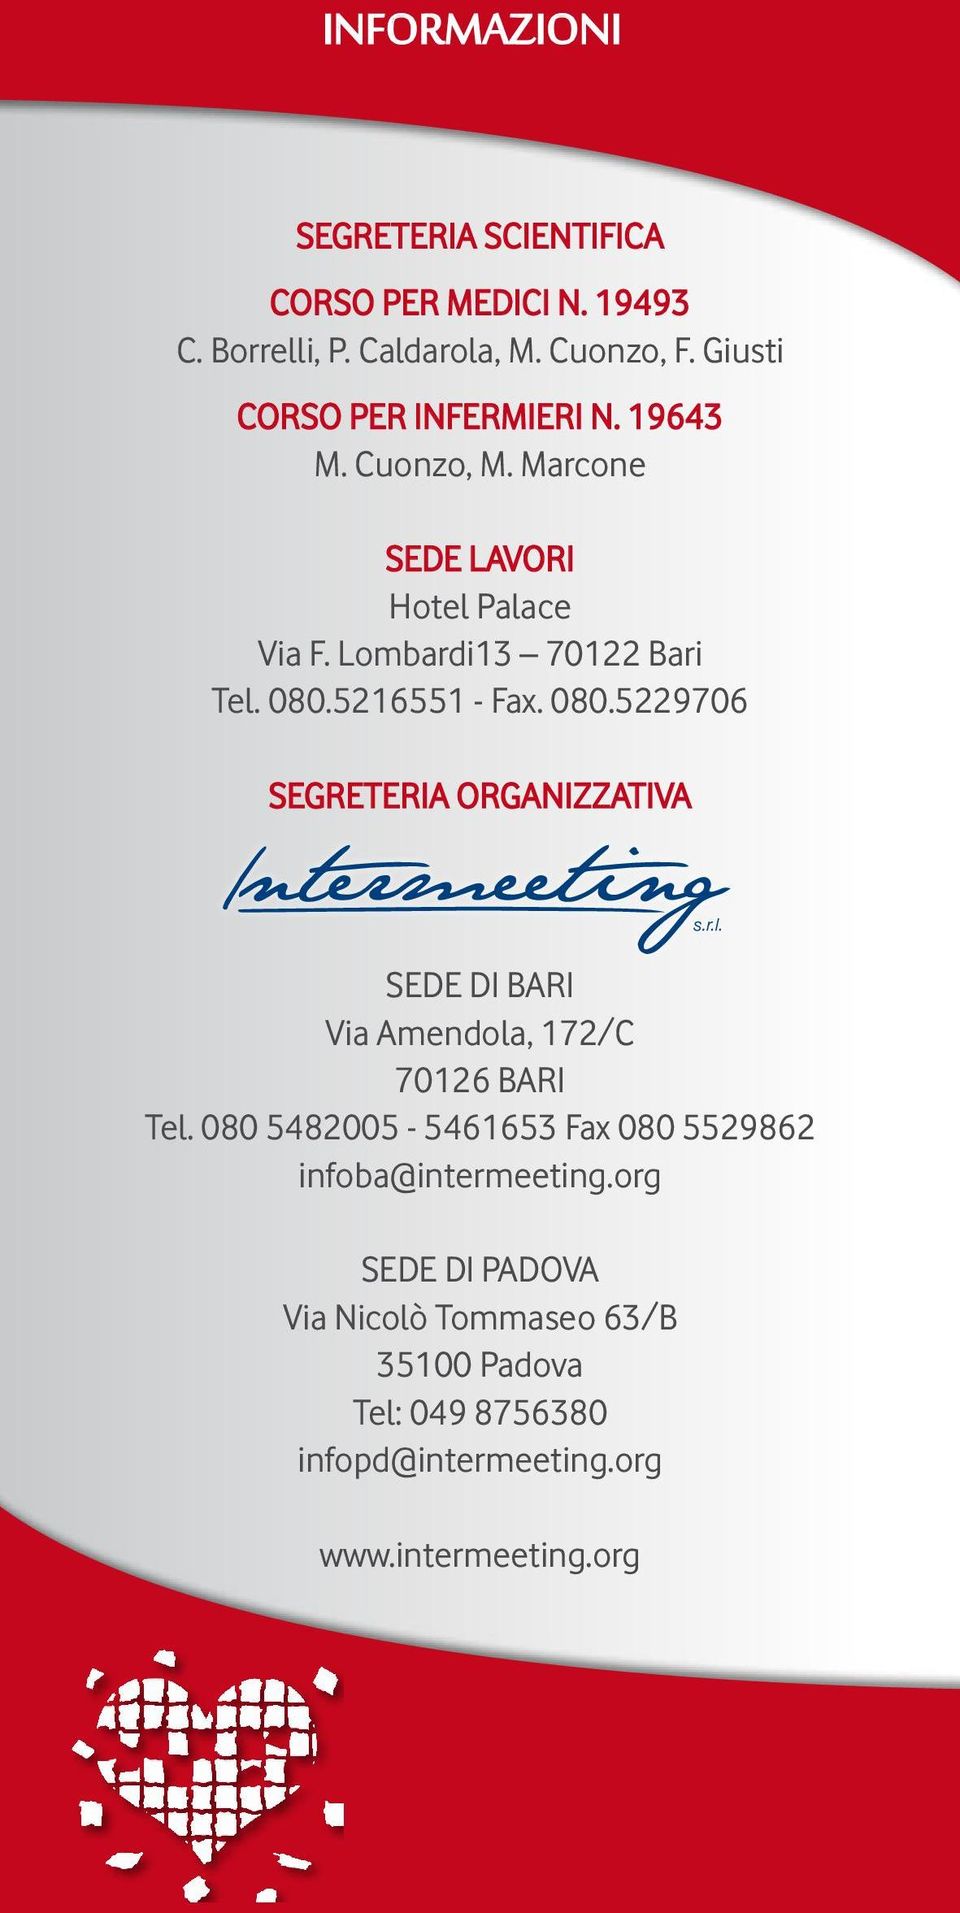 5216551 - Fax. 080.5229706 SEGRETERIA ORGANIZZATIVA SEDE DI BARI Via Amendola, 172/C 70126 BARI Tel.